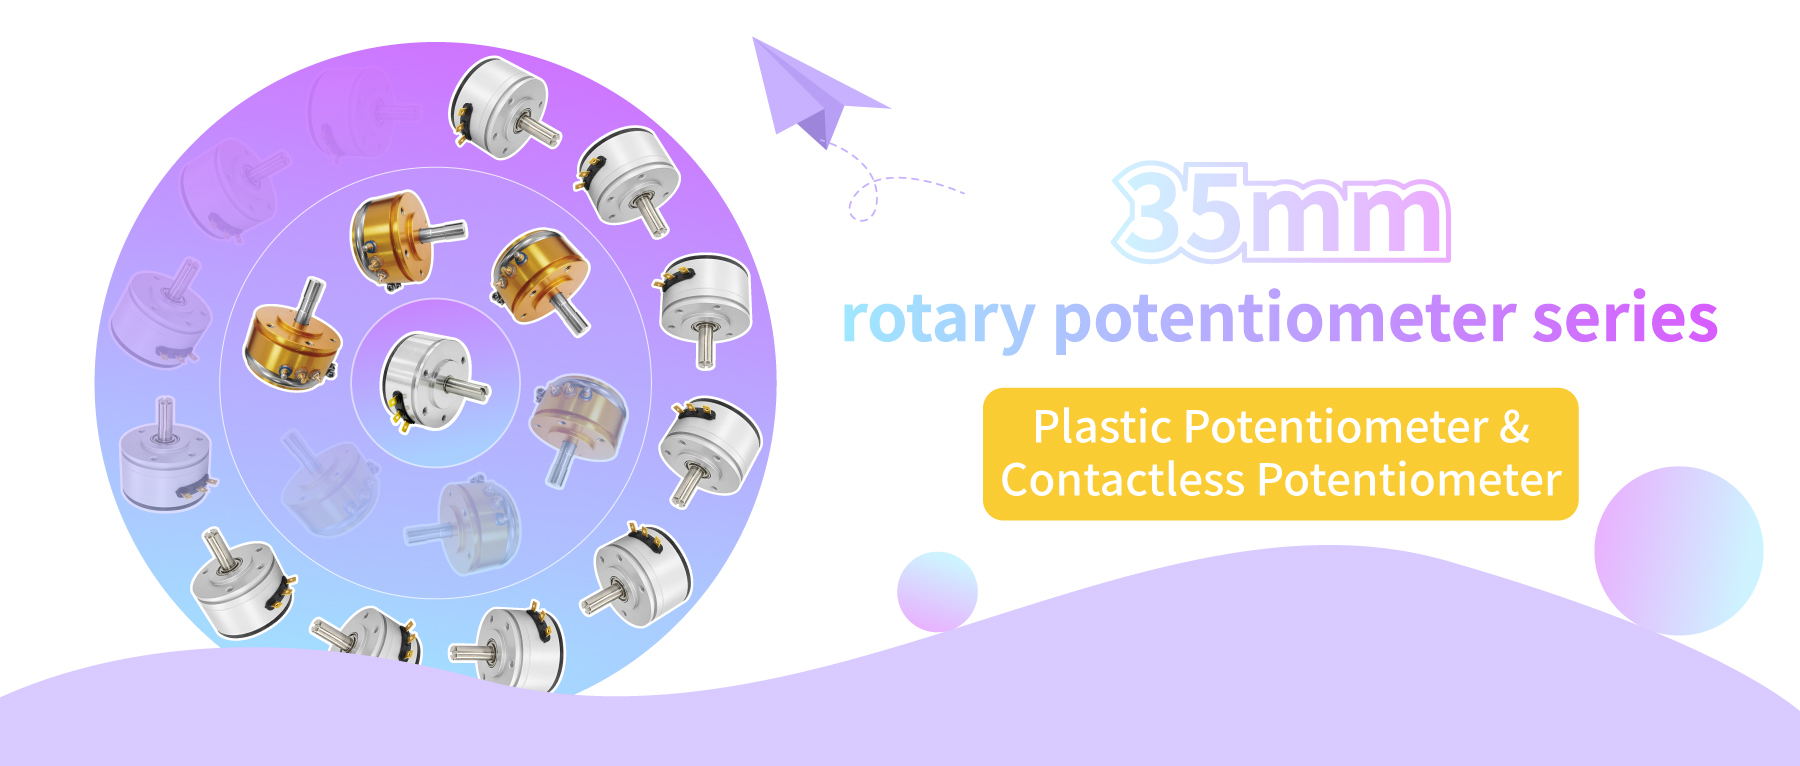 35mm rotary potentiometer series